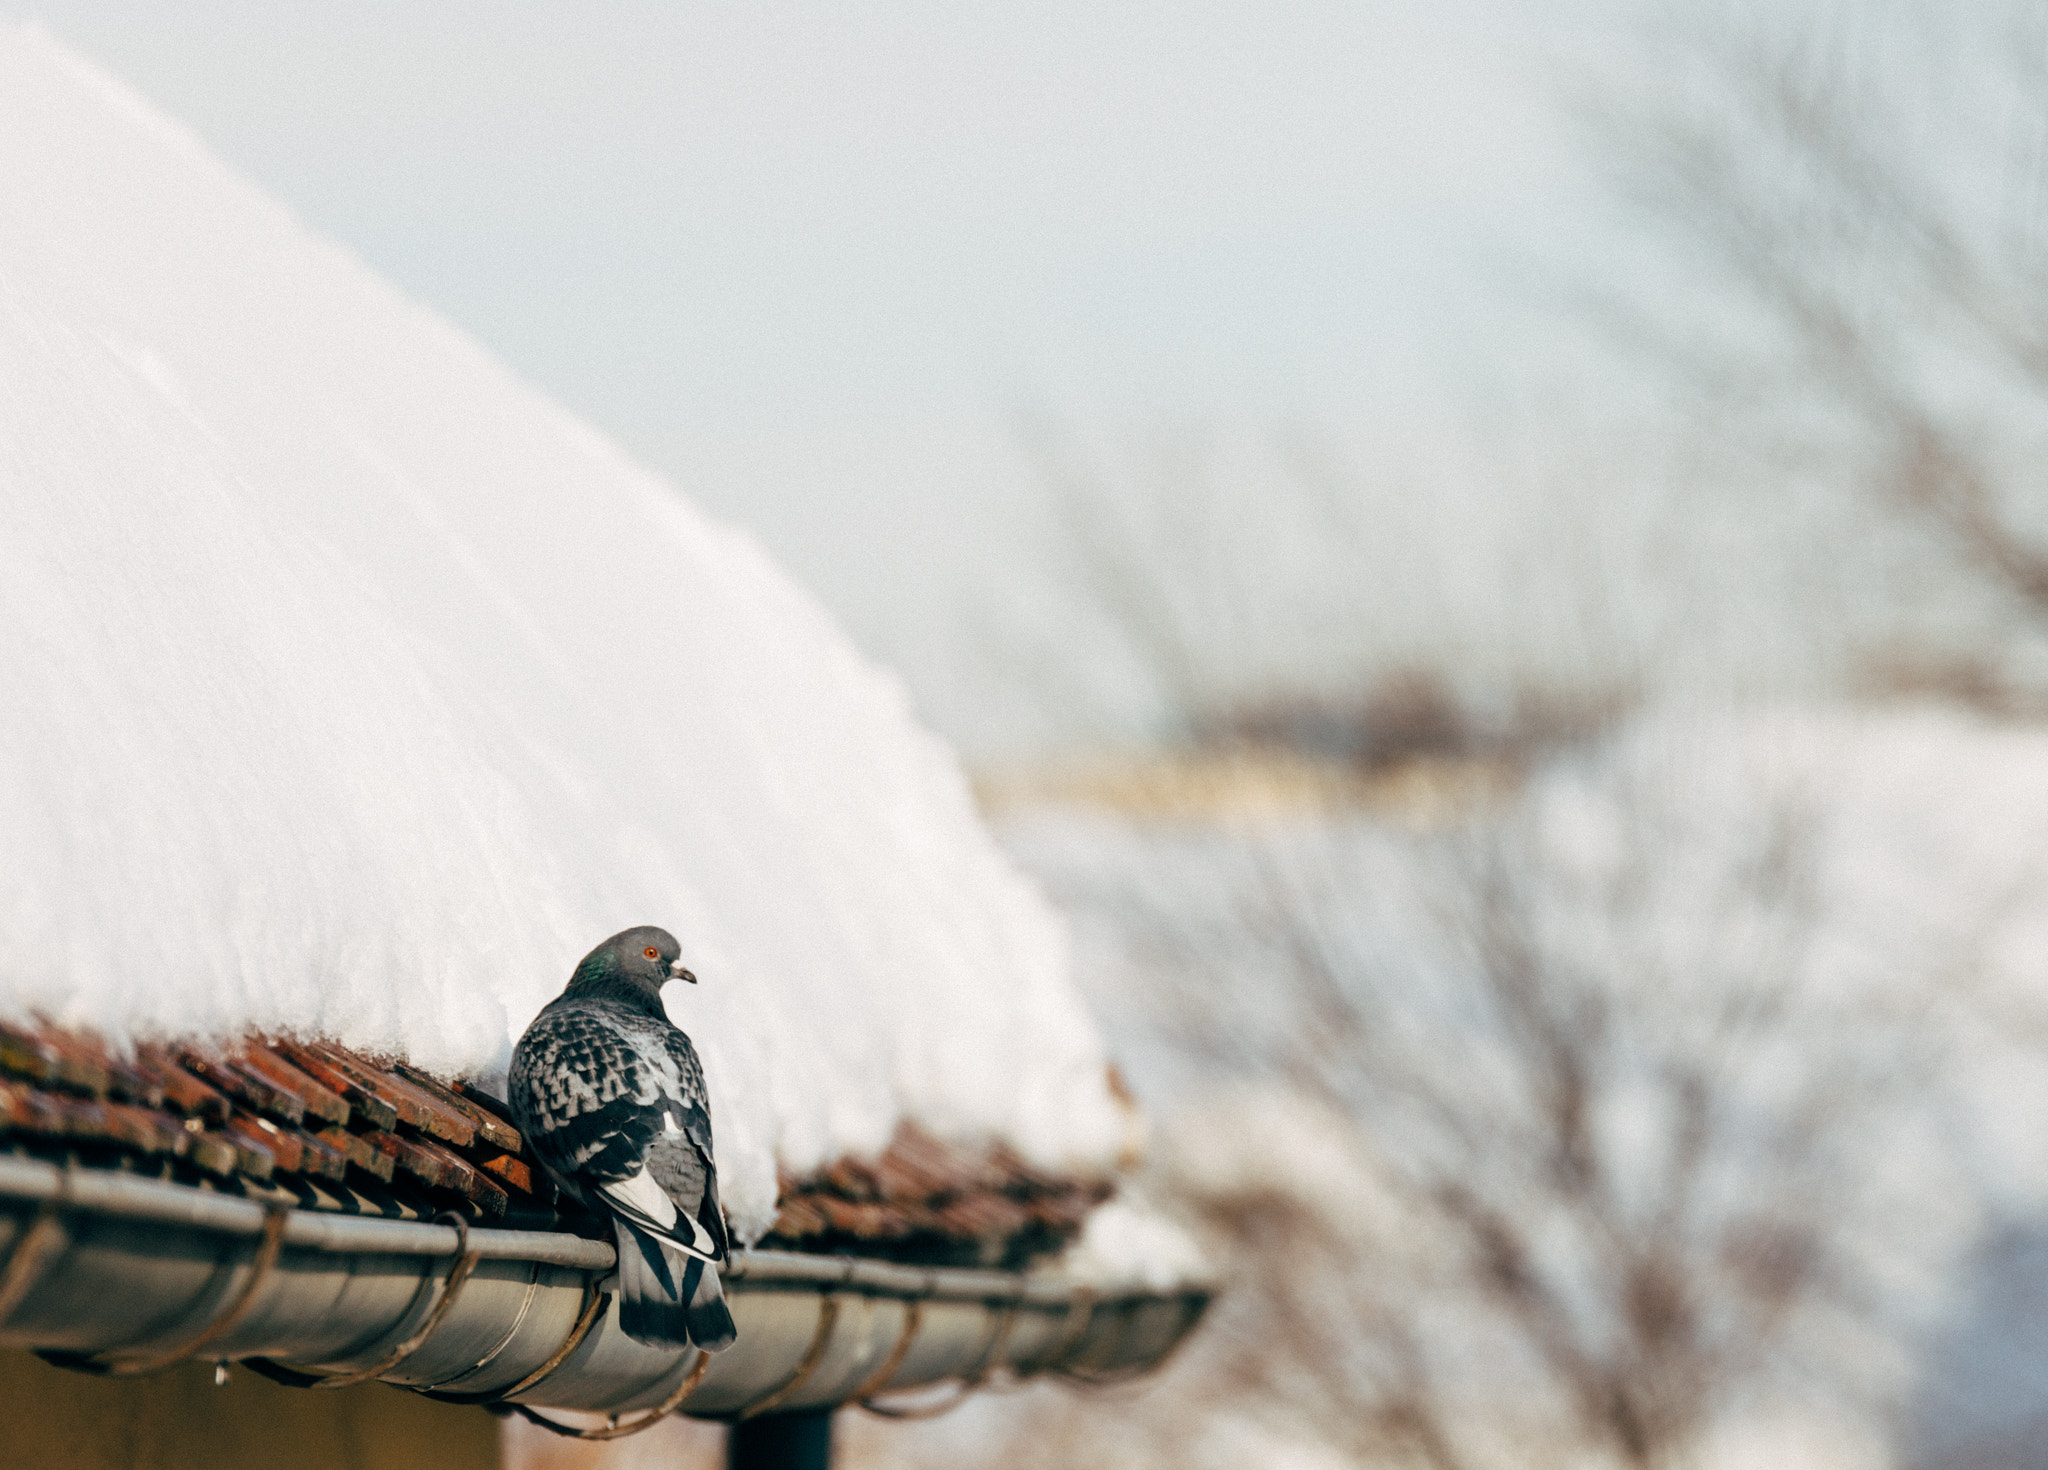 Nikon D610 sample photo. Pigeon facing the snow photography